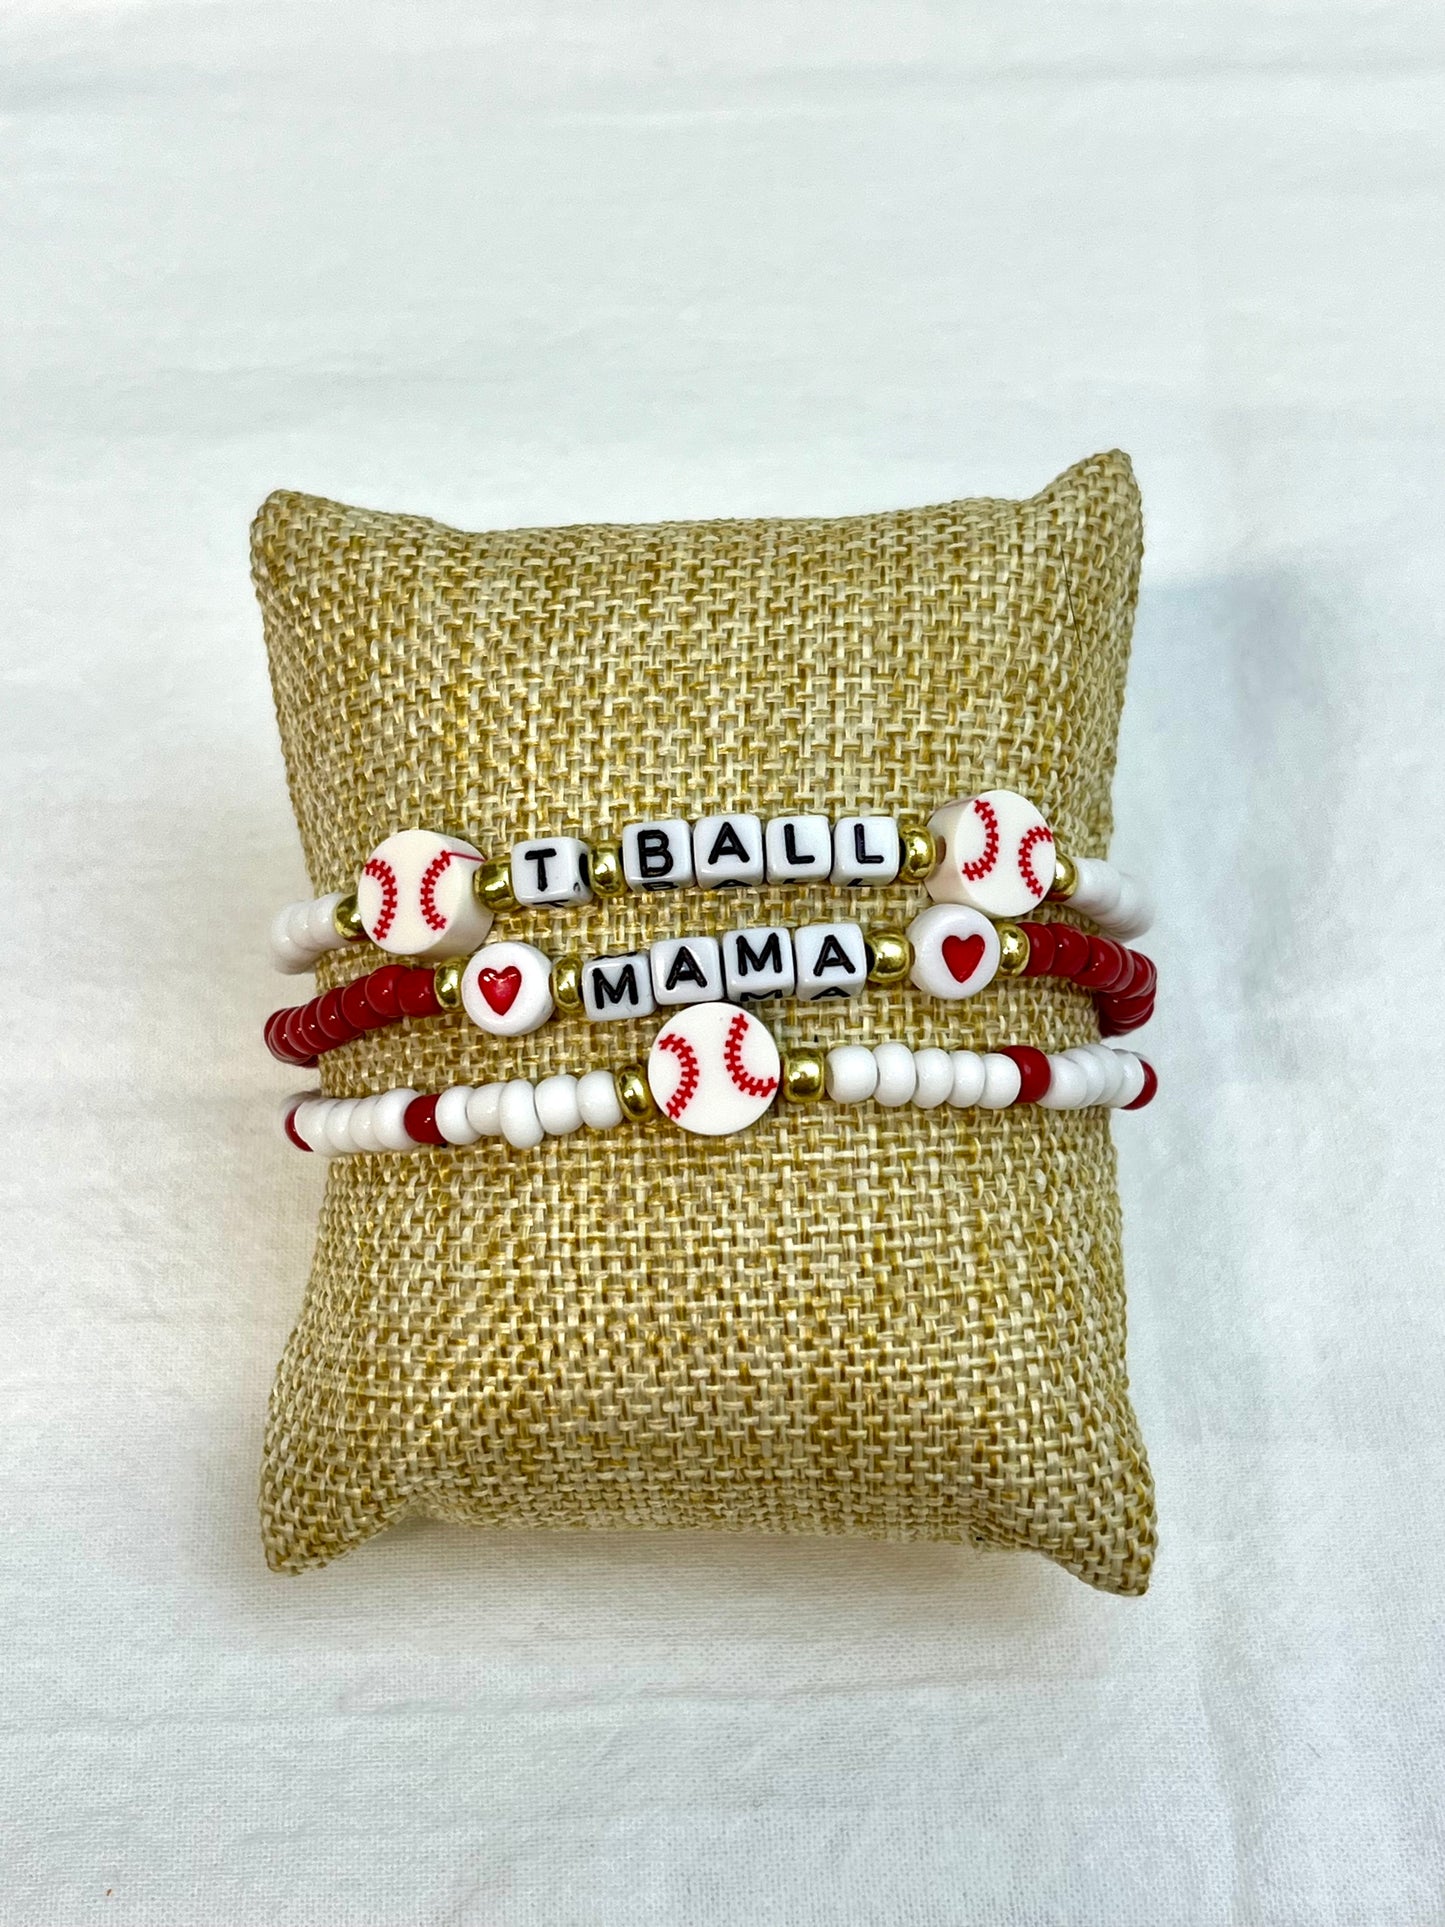 Baseball | Softball | Tball Mom | Handmade Bracelet Stacks